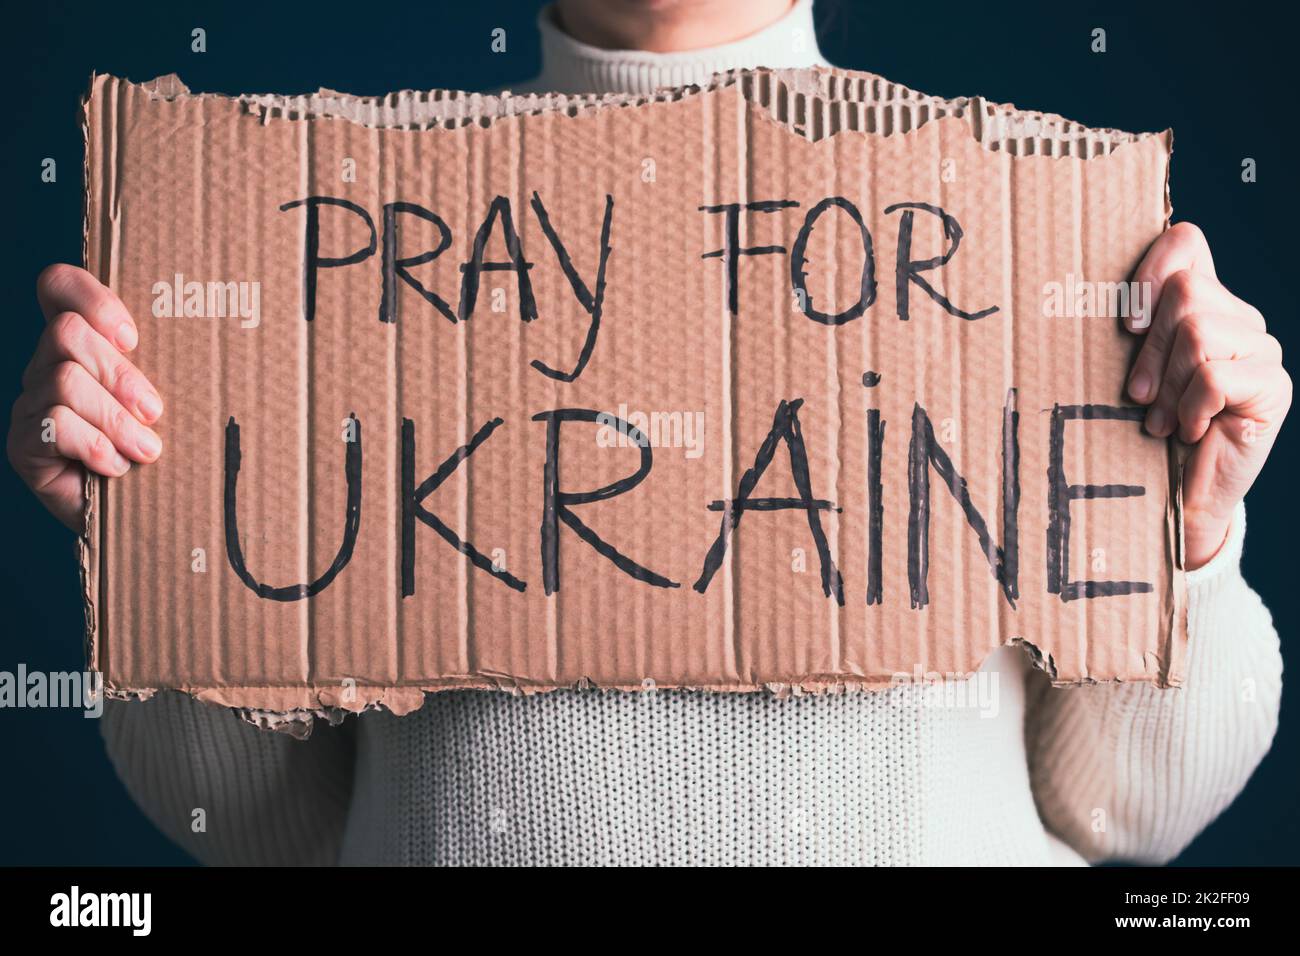 Gros plan sur la main de femme avec la bannière prier pour l'Ukraine Banque D'Images